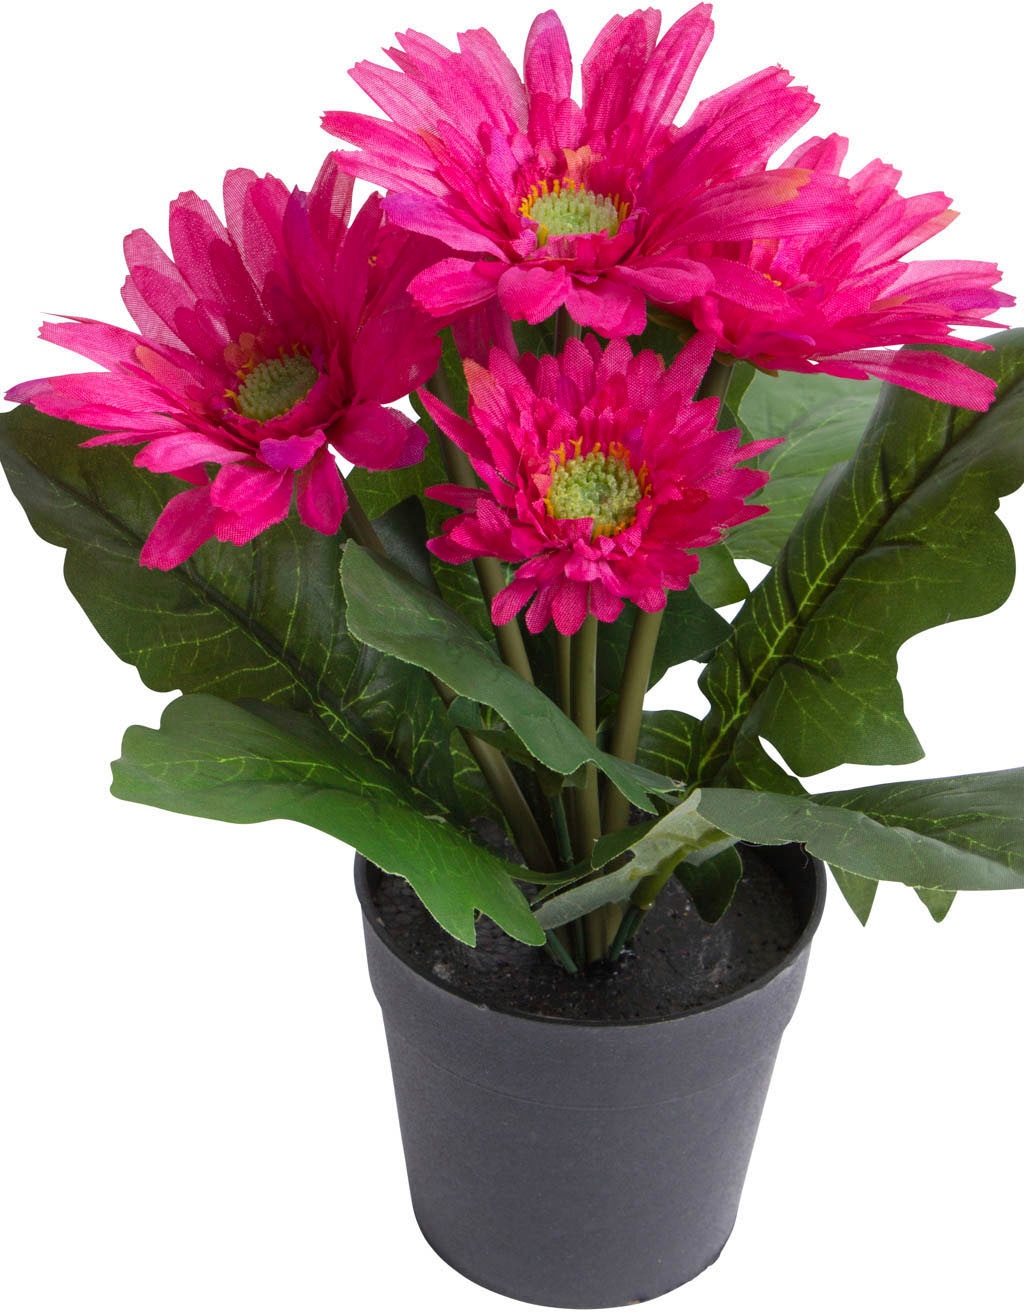 Botanic-Haus Kunstblume »Gerbera mit 5 Blüten« auf Rechnung kaufen